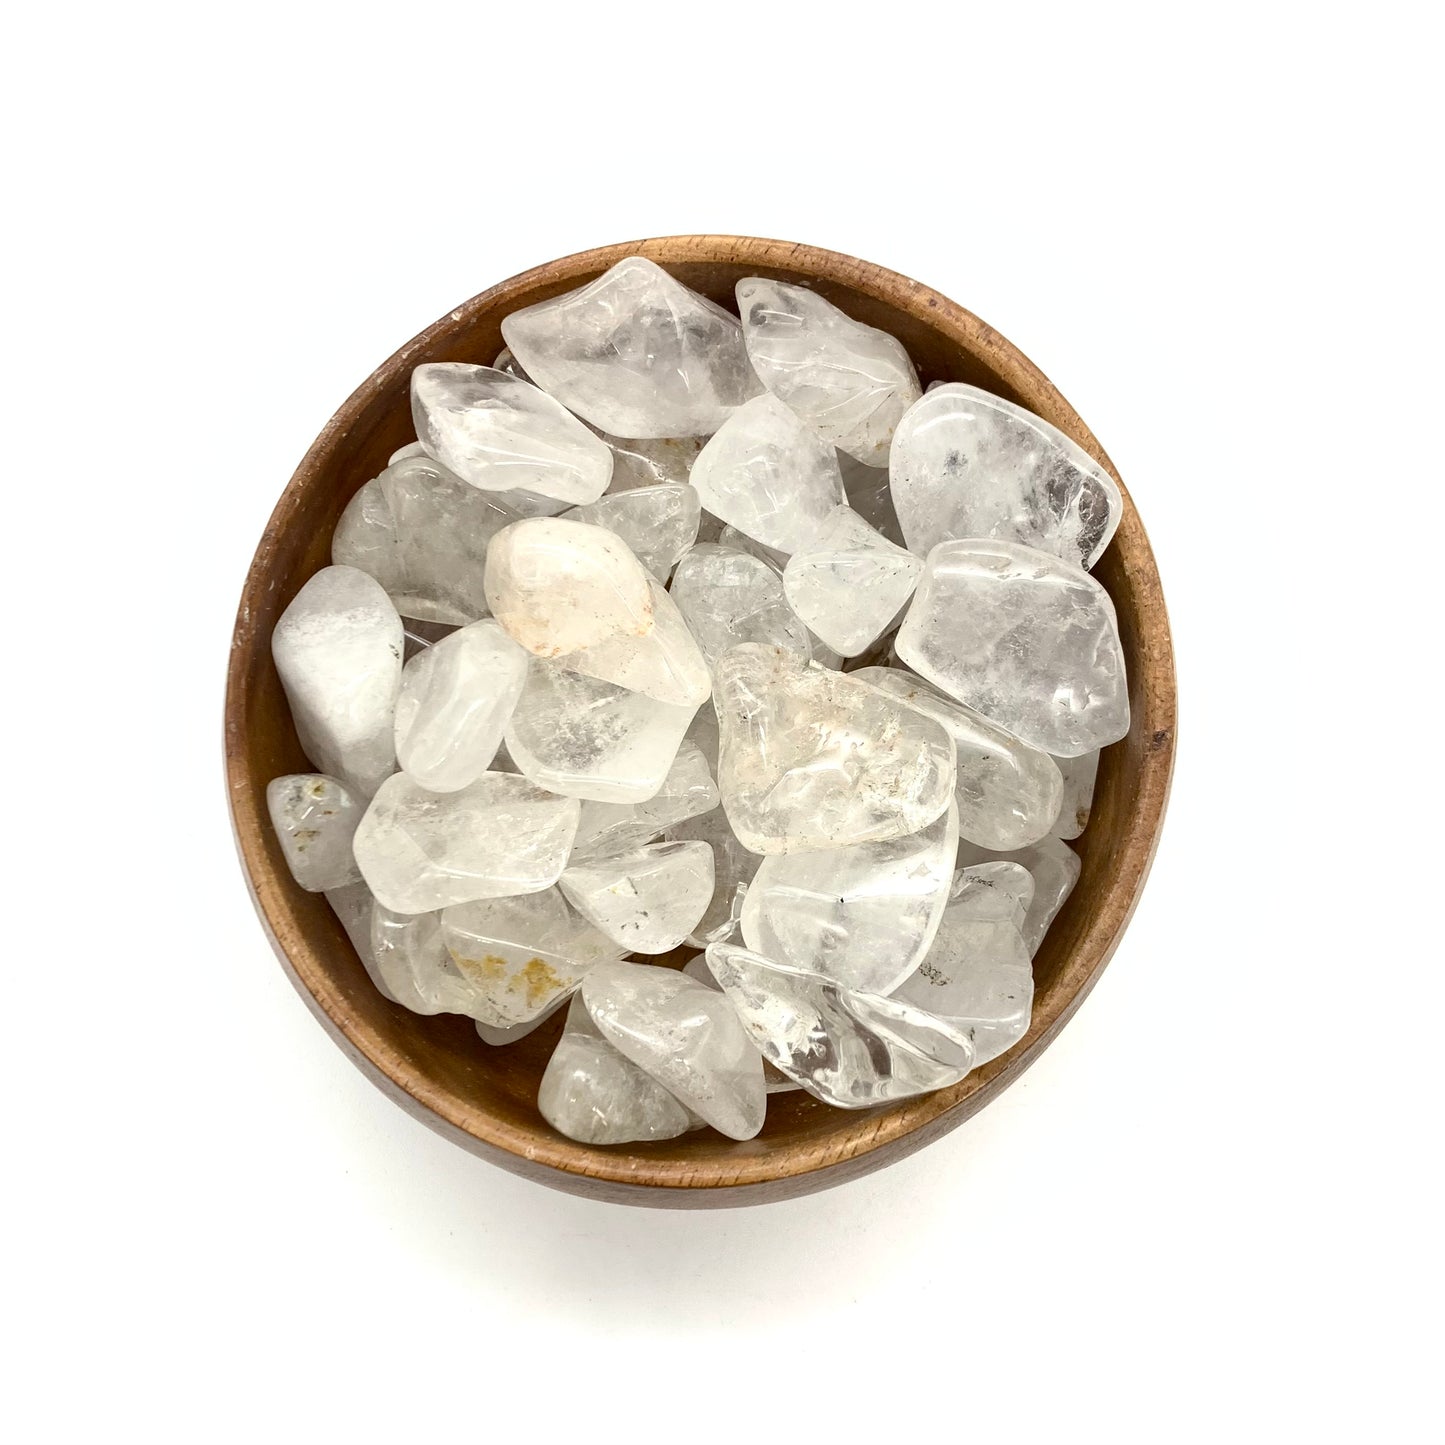 Beautiful Premium Clear Quartz Tumbled Stones - 1 Inch